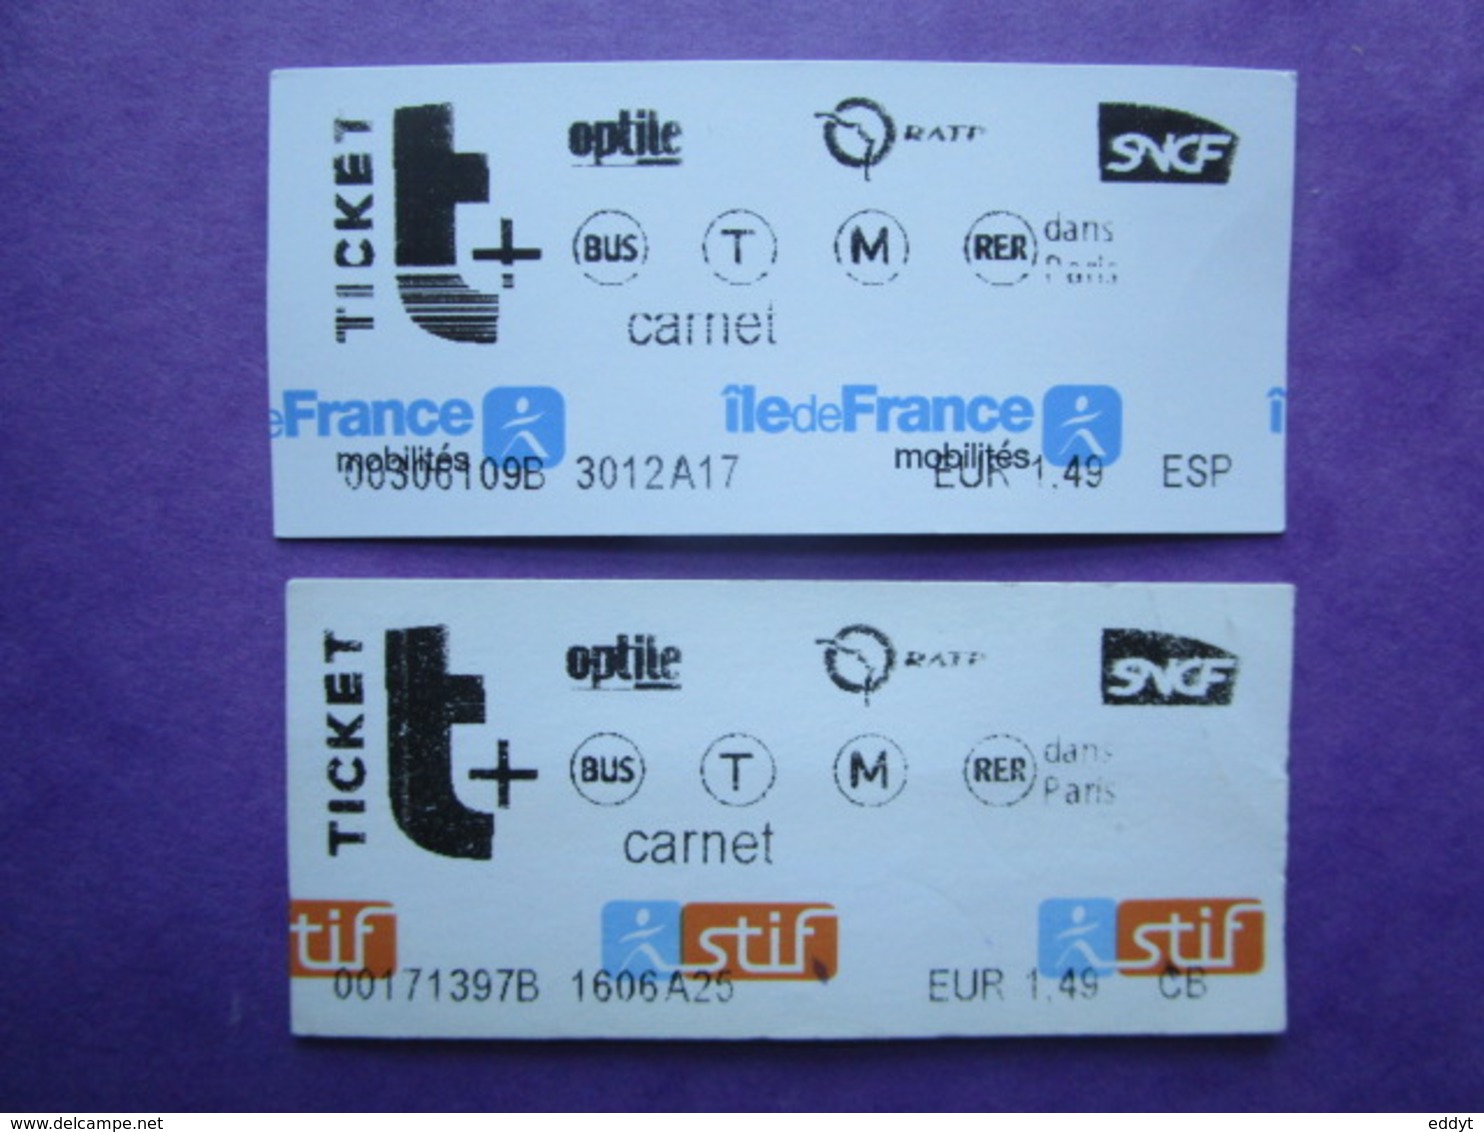 2 TICKETS  Métro Autobus Rer -  RATP - SNCF - PARIS -  2° Classe  - TBE - Monde